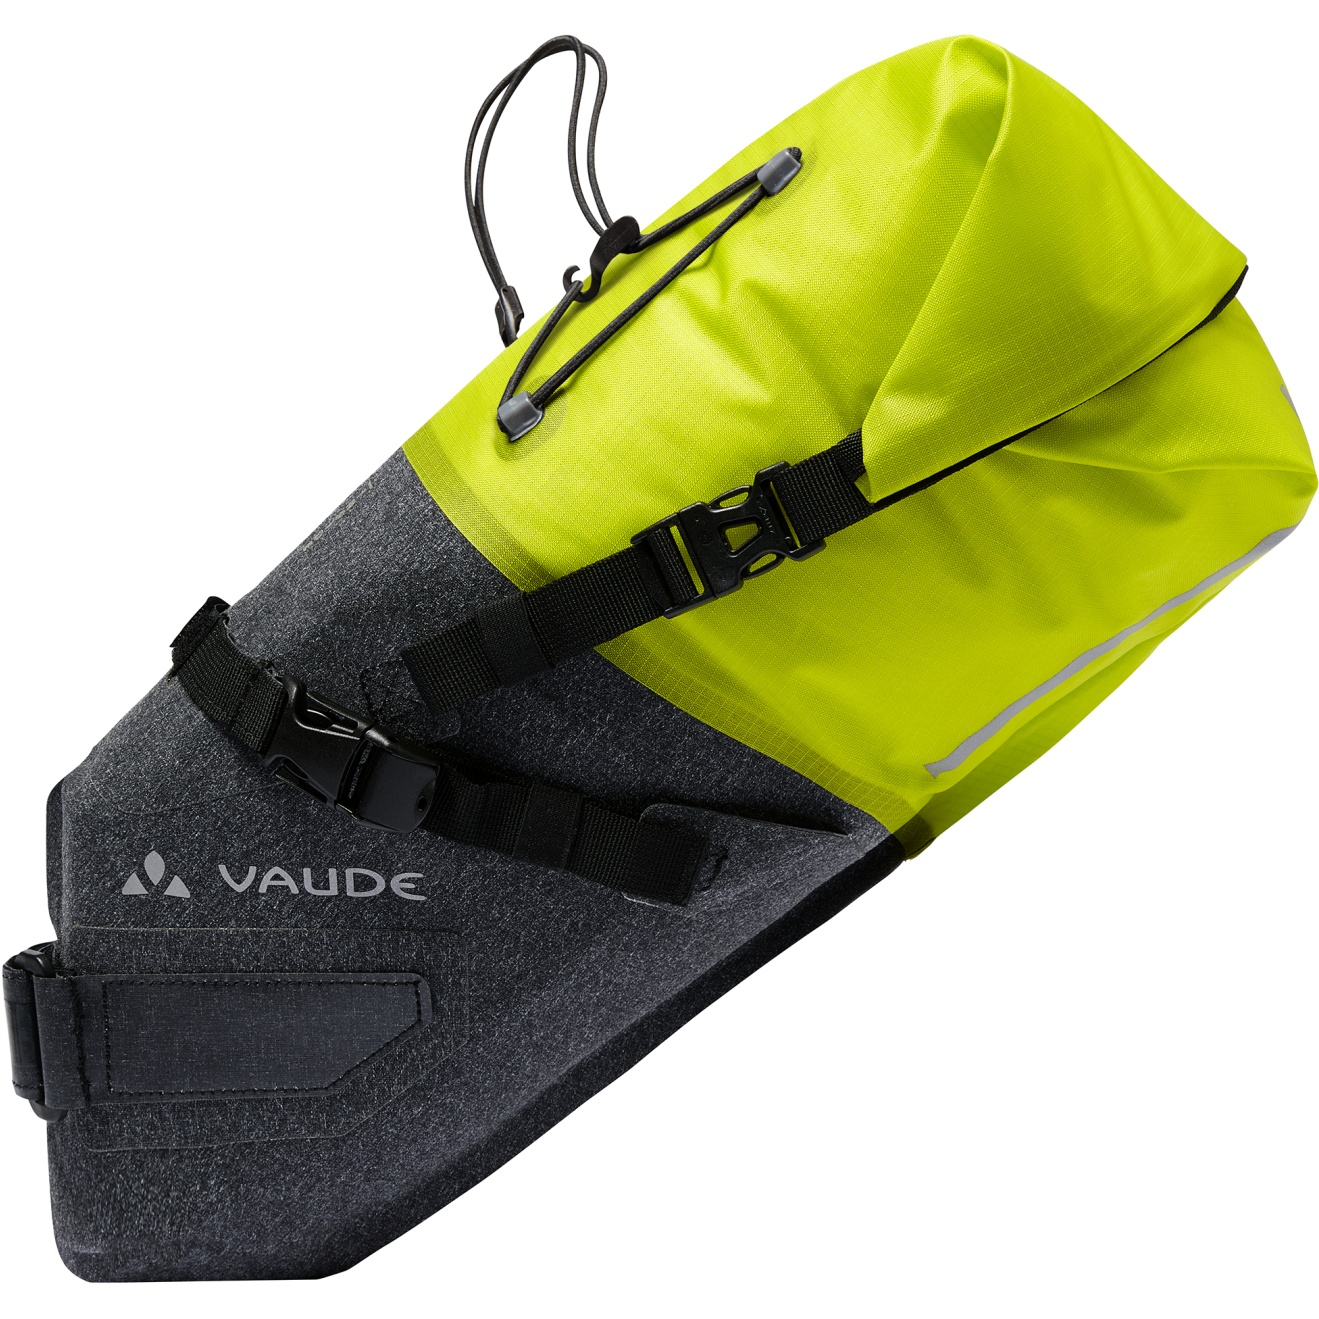 Produktbild von Vaude Trailsaddle Compact Satteltasche - 7L - bright green/black